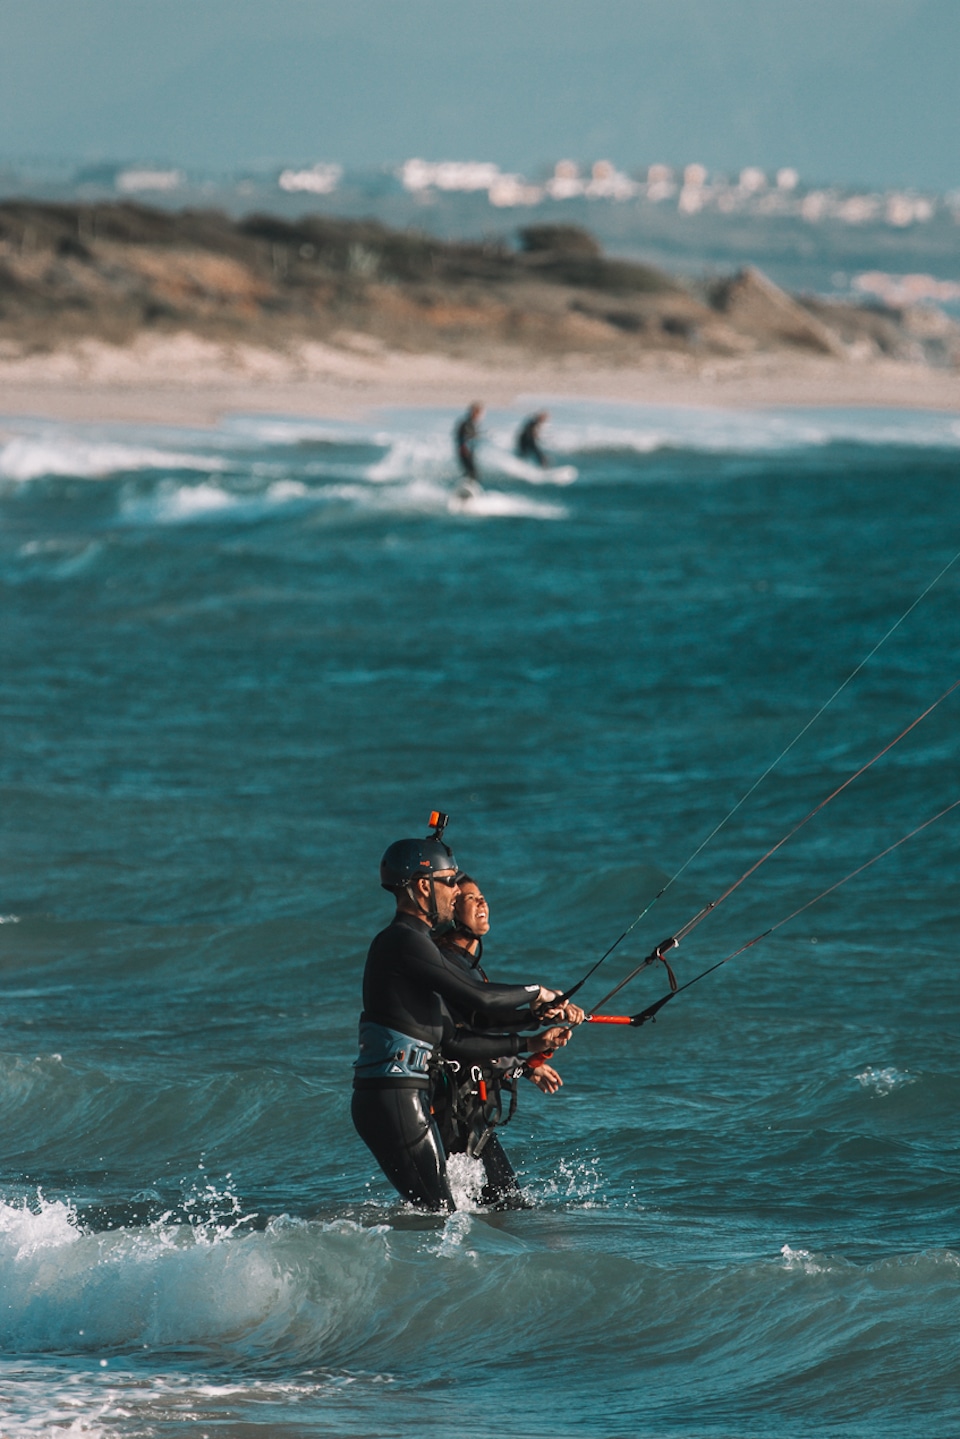 leren kitesurfen in Tarifa